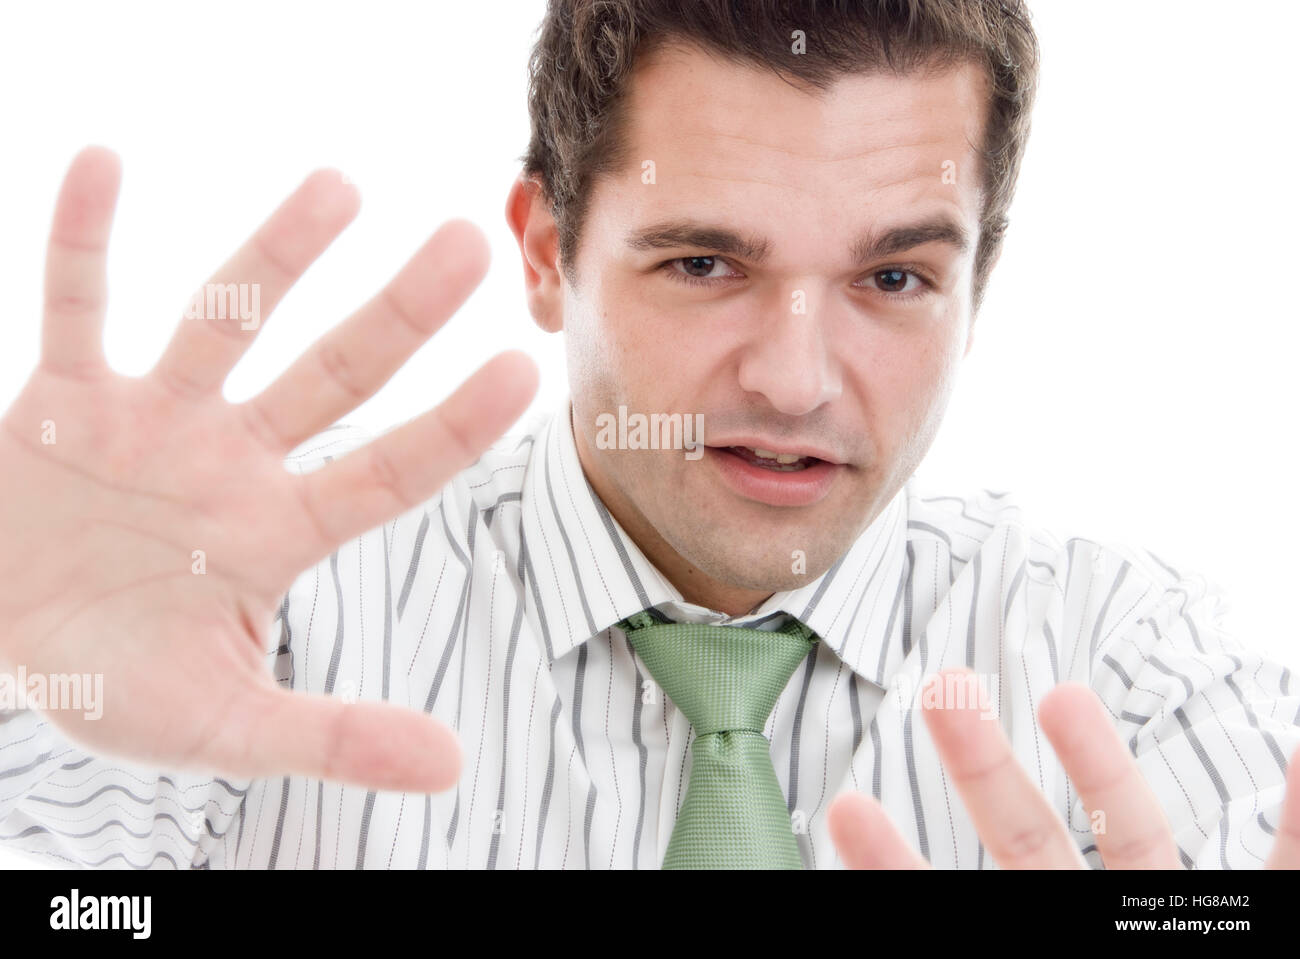 21 Палец у мужчин. Стратегия мужик с пальцами. Фото мужчины с пальцами у Виска. Парень пальцем входит